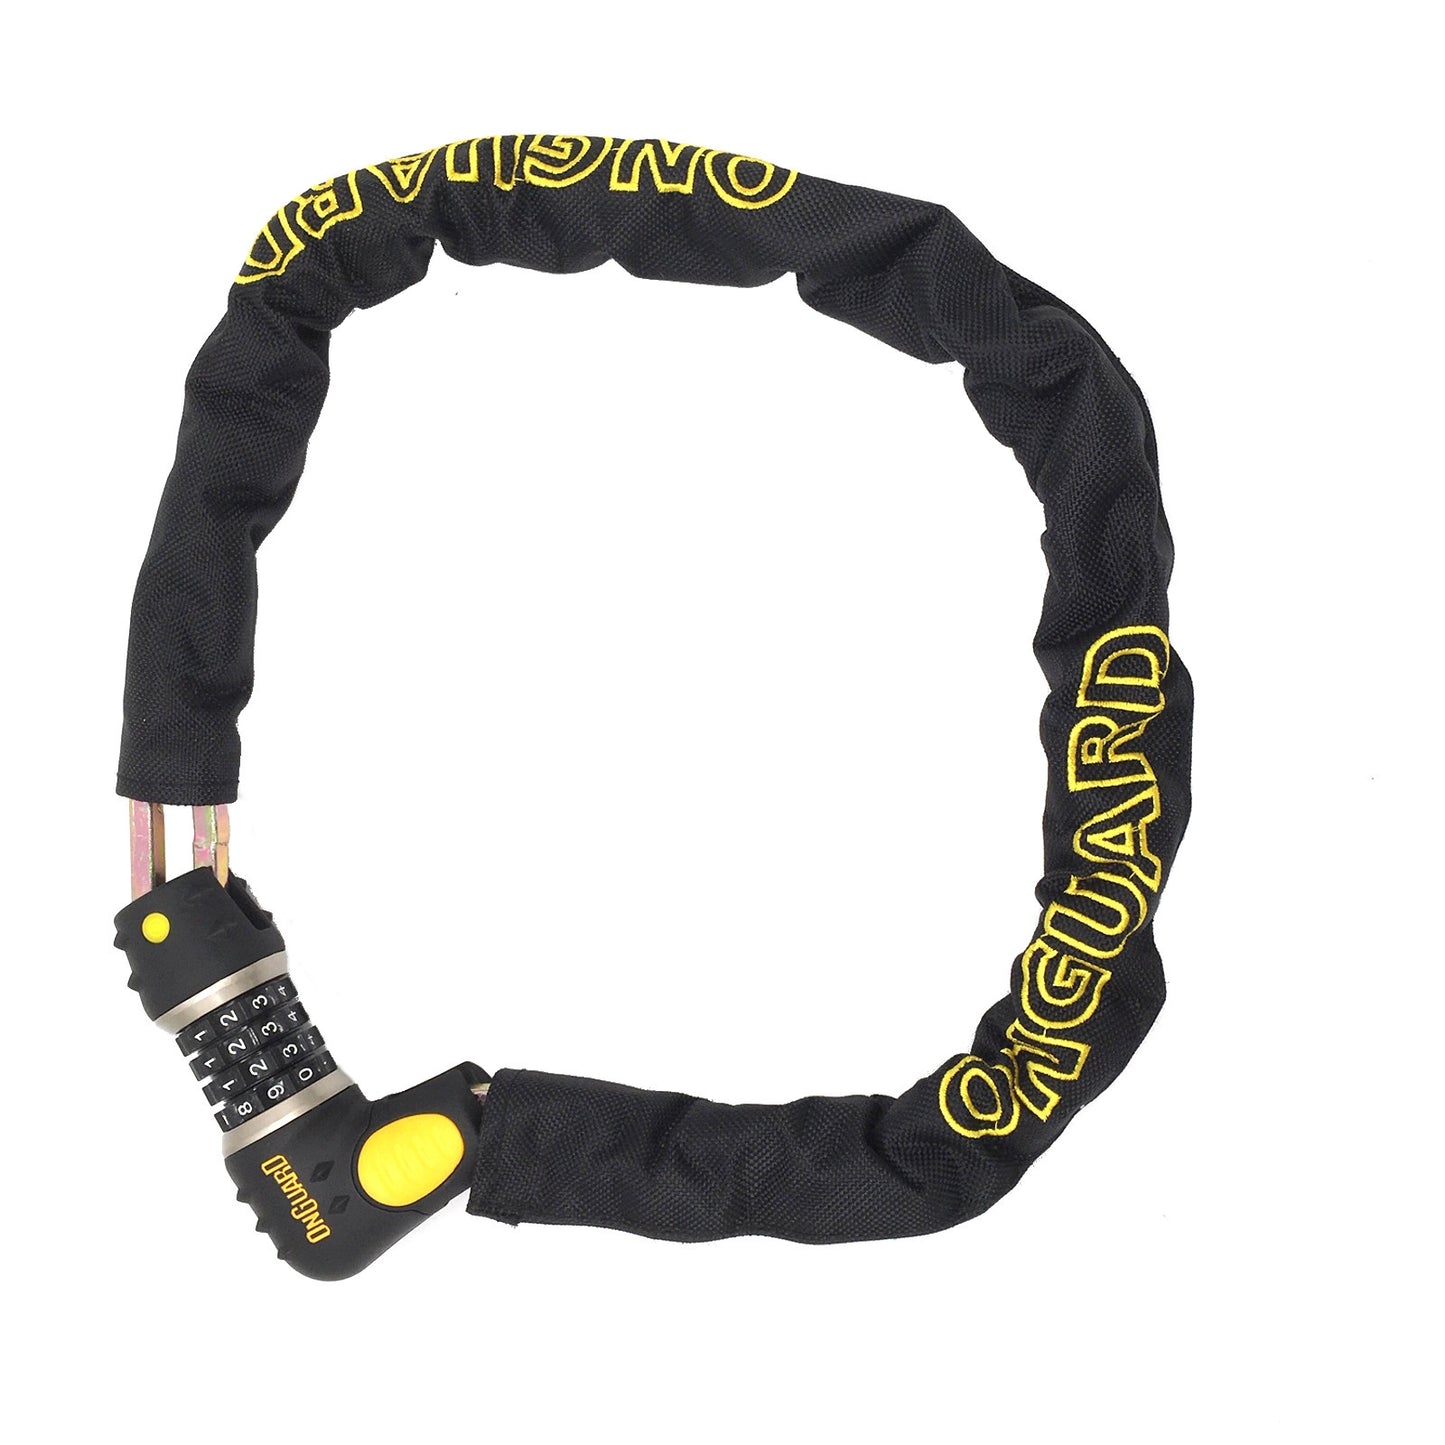 Onguard Mastiff 8022 C Bike Chain Lock